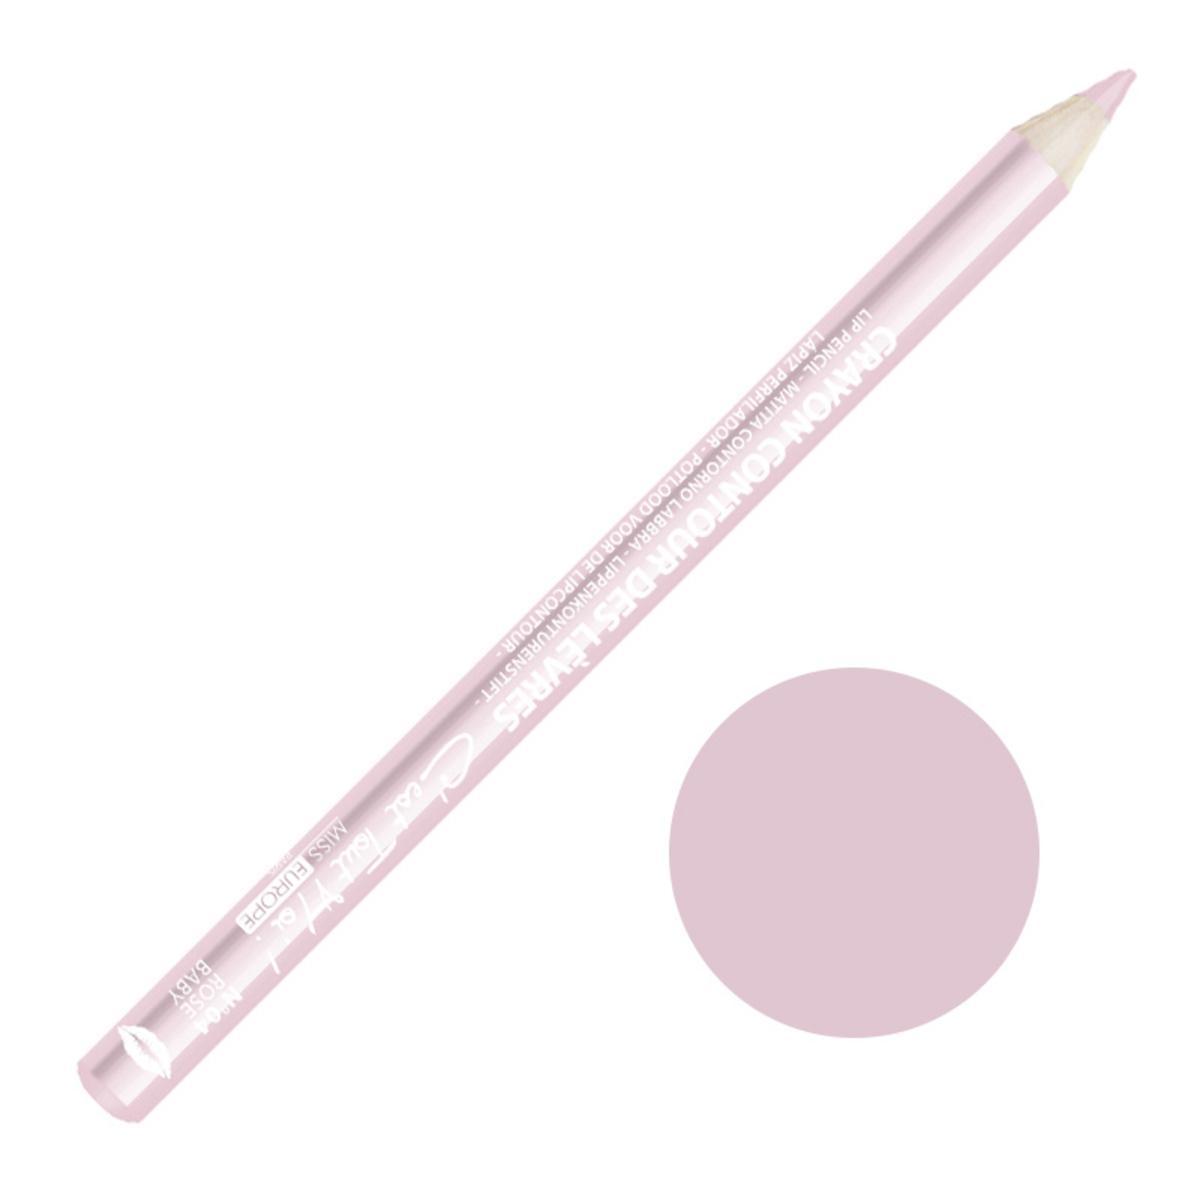 Crayon contour des lèvres n°04 - ø 0.9 x L 16.2 cm - Rose Poupée - MISS EUROPE